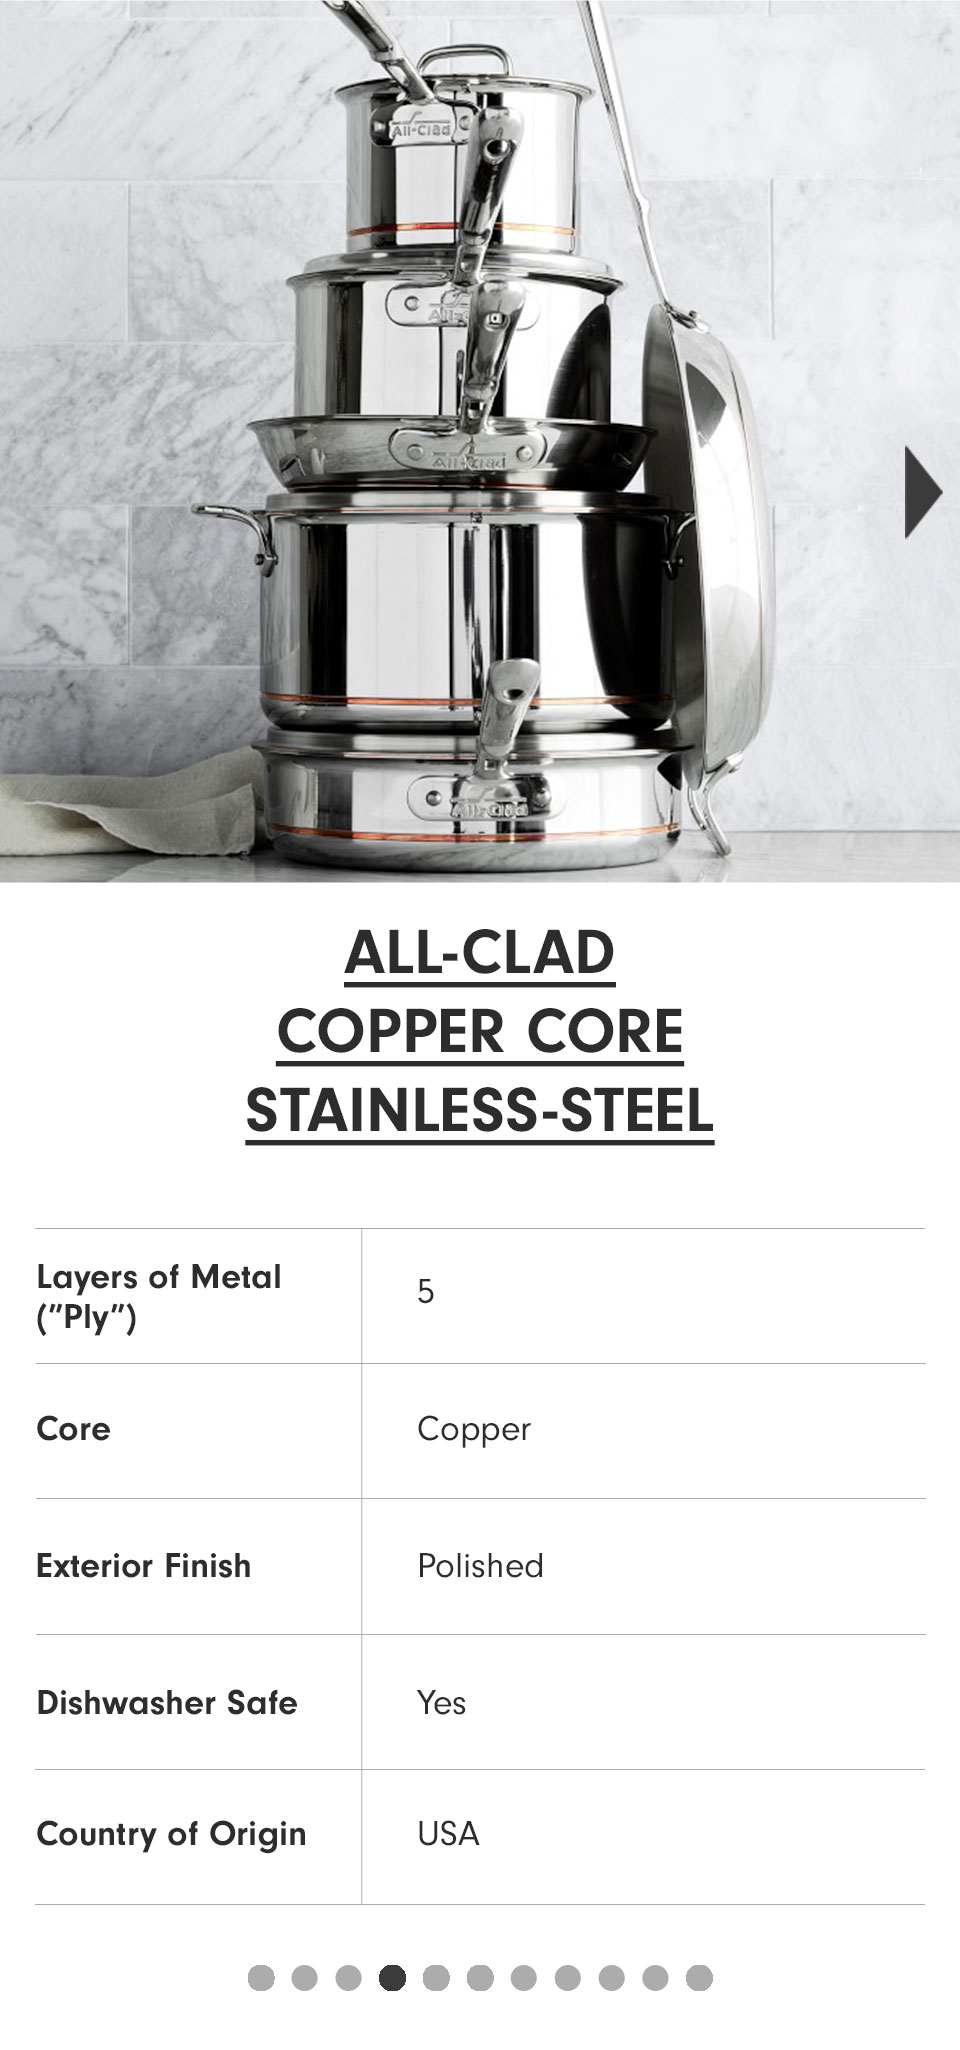 All-Clad Copper Core >